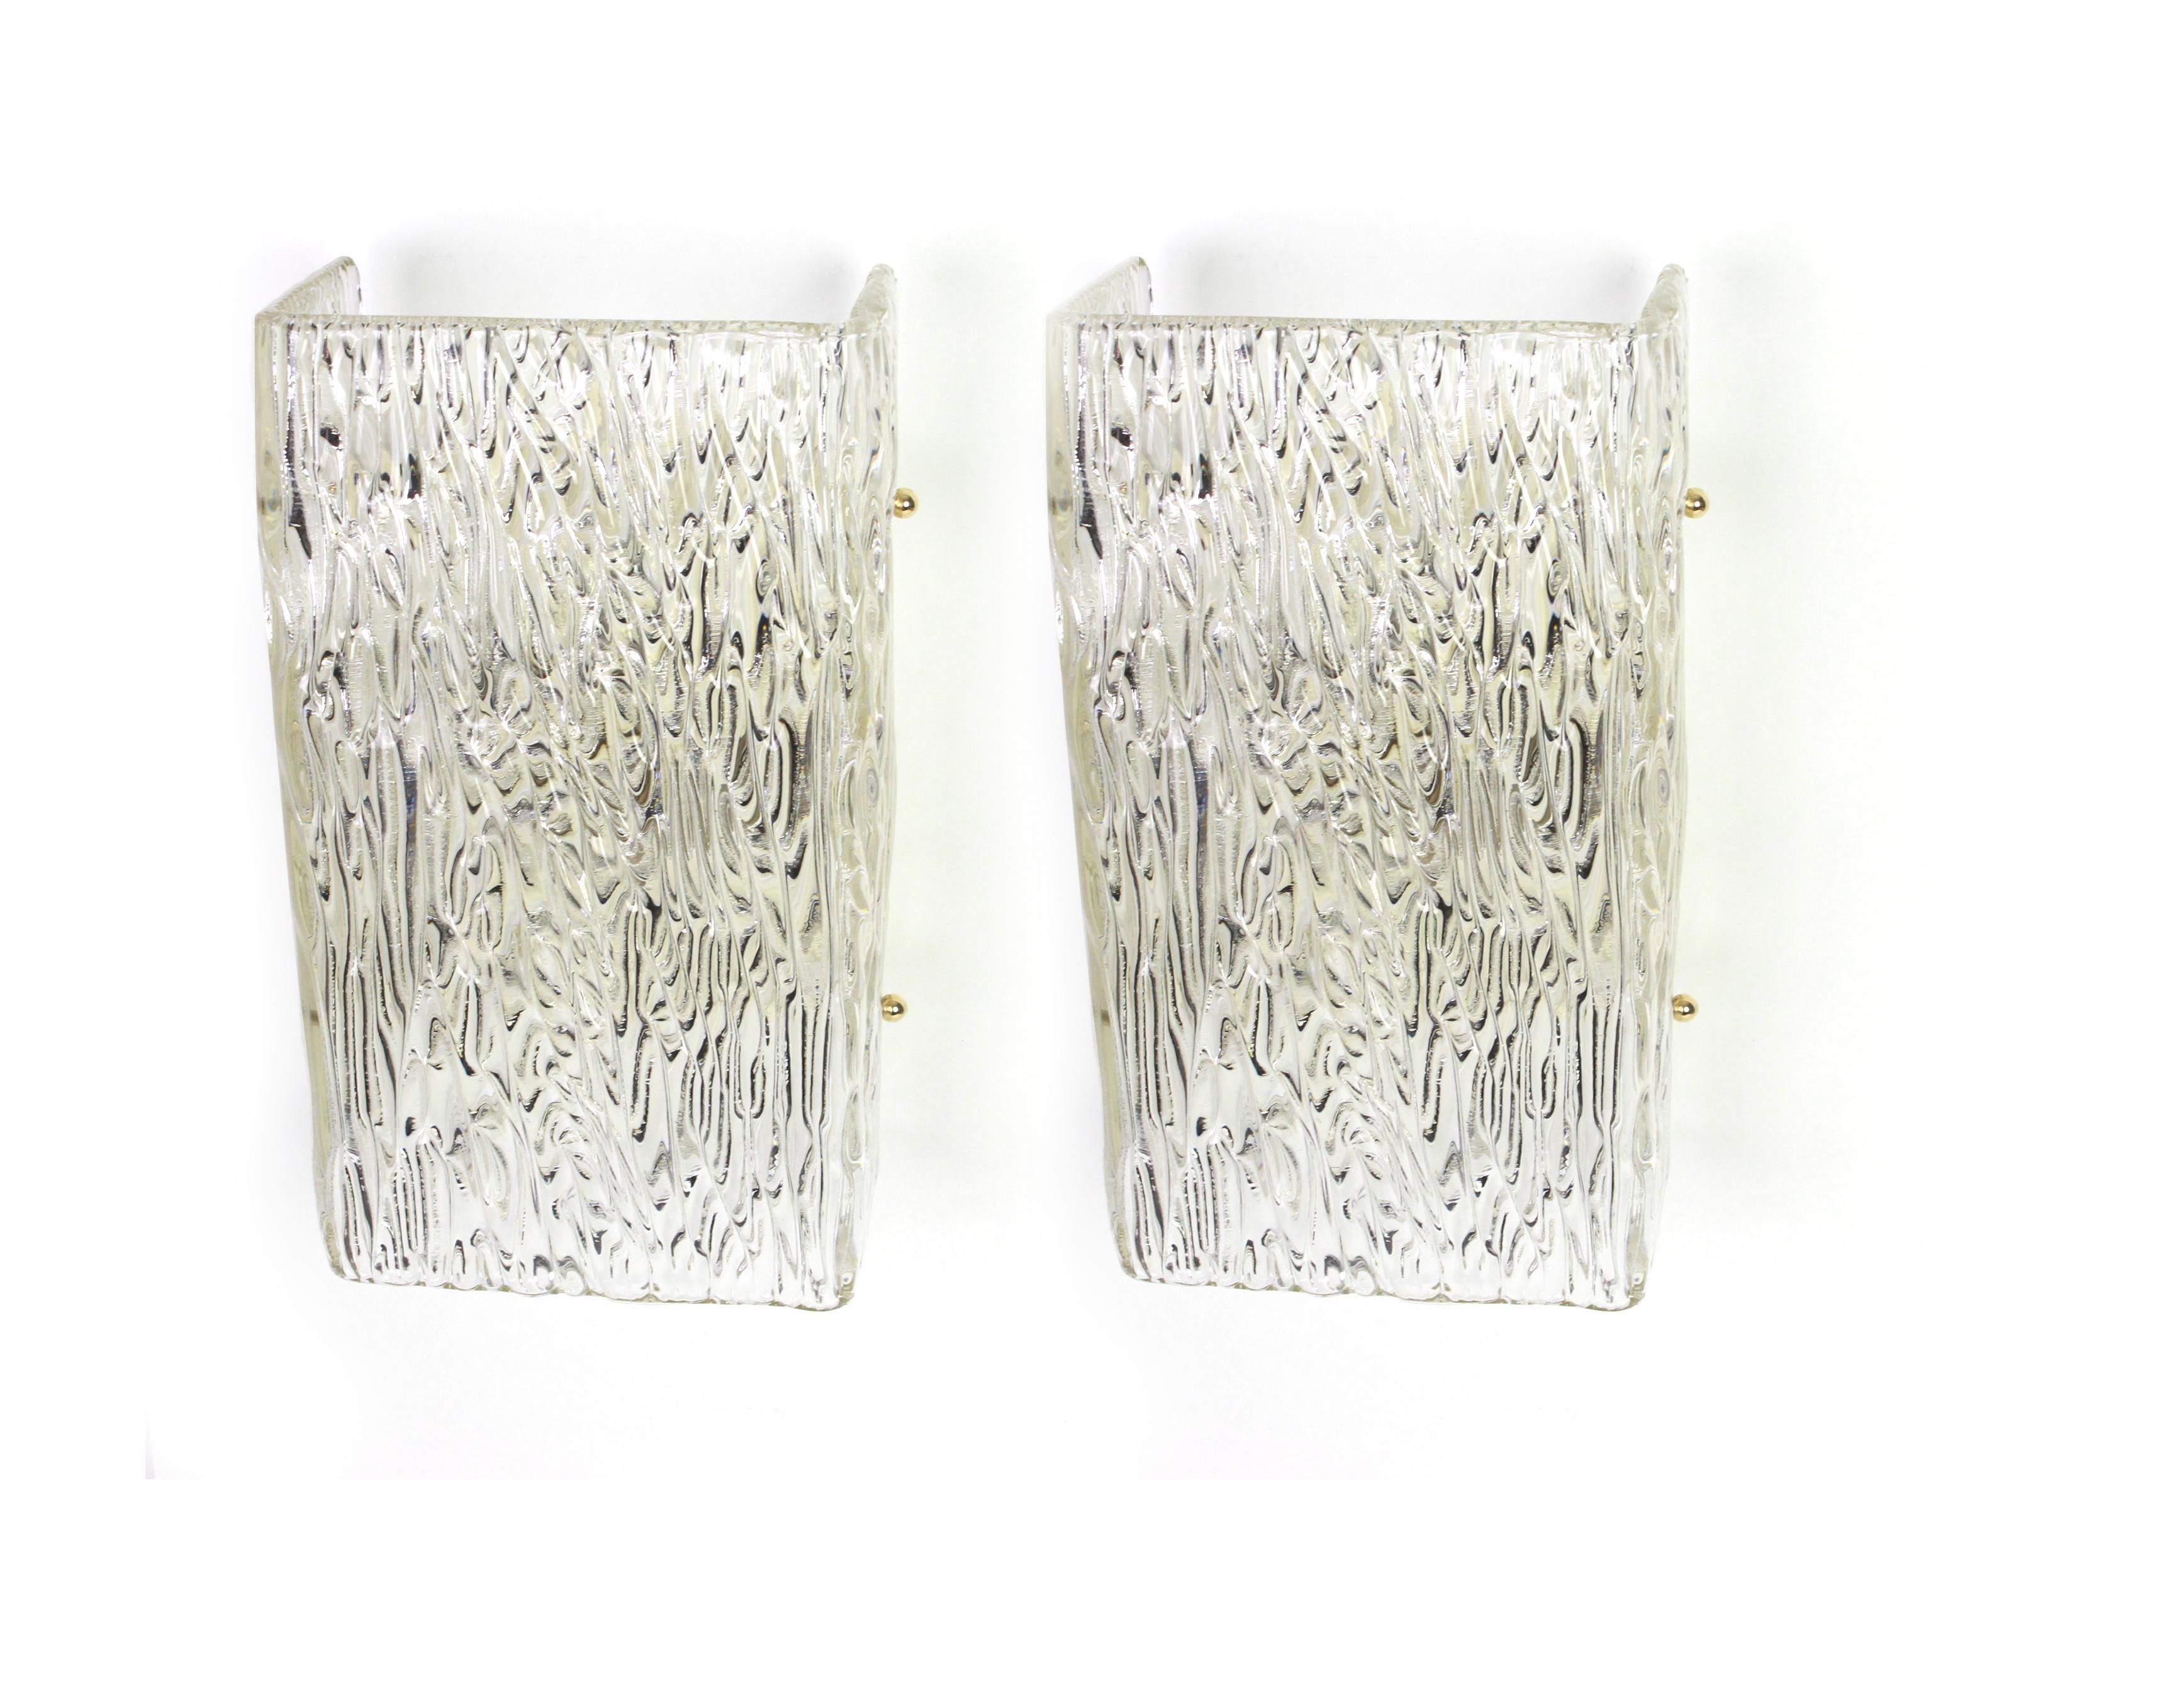 Wunderschönes Paar Wandleuchter aus der Mitte des Jahrhunderts mit großem Murano-Glas auf einem Rahmen in jeder Wandlampe, hergestellt von Kalmar, Österreich, ca. 1960-1969.
Jede Leuchte benötigt zwei E27-Standard-Glühbirnen und ist auch mit den